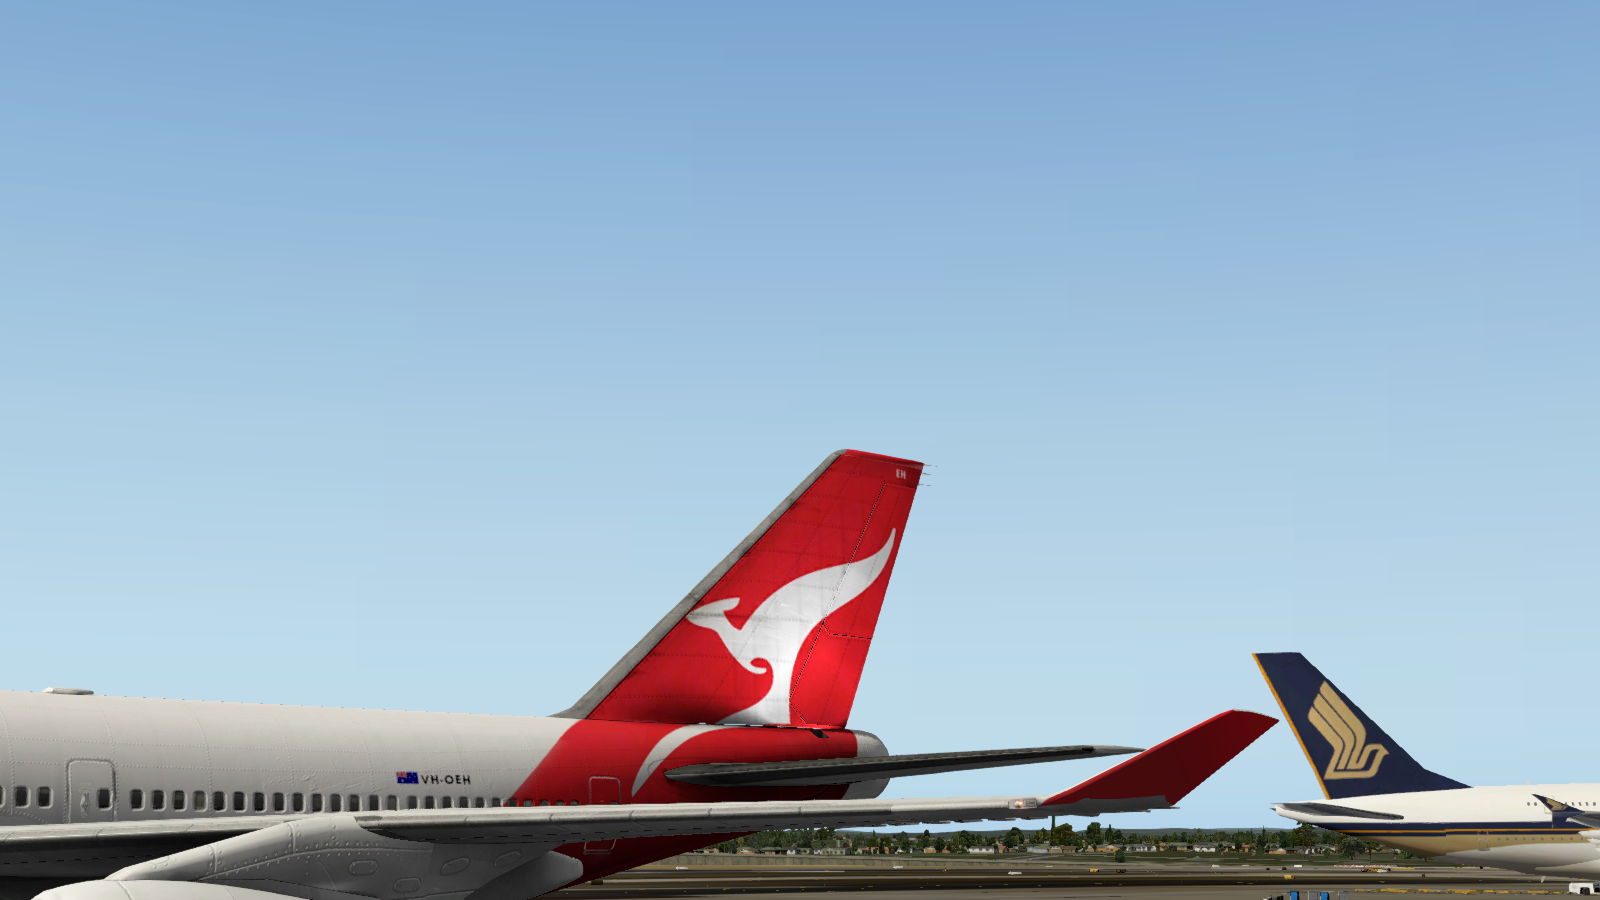 747 400 qantas at gate